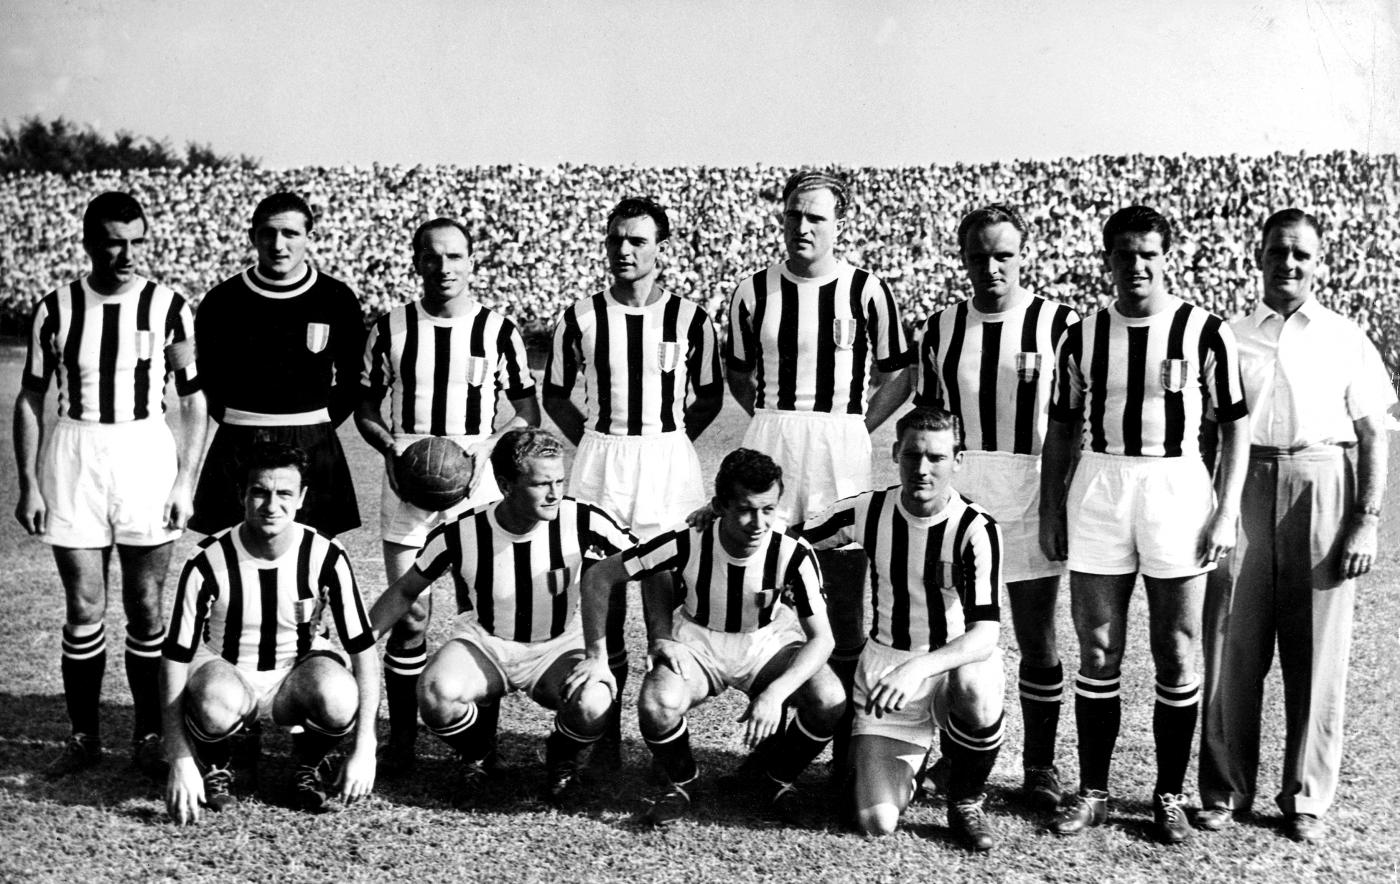 Juventus F.C. - Wikipedia article 